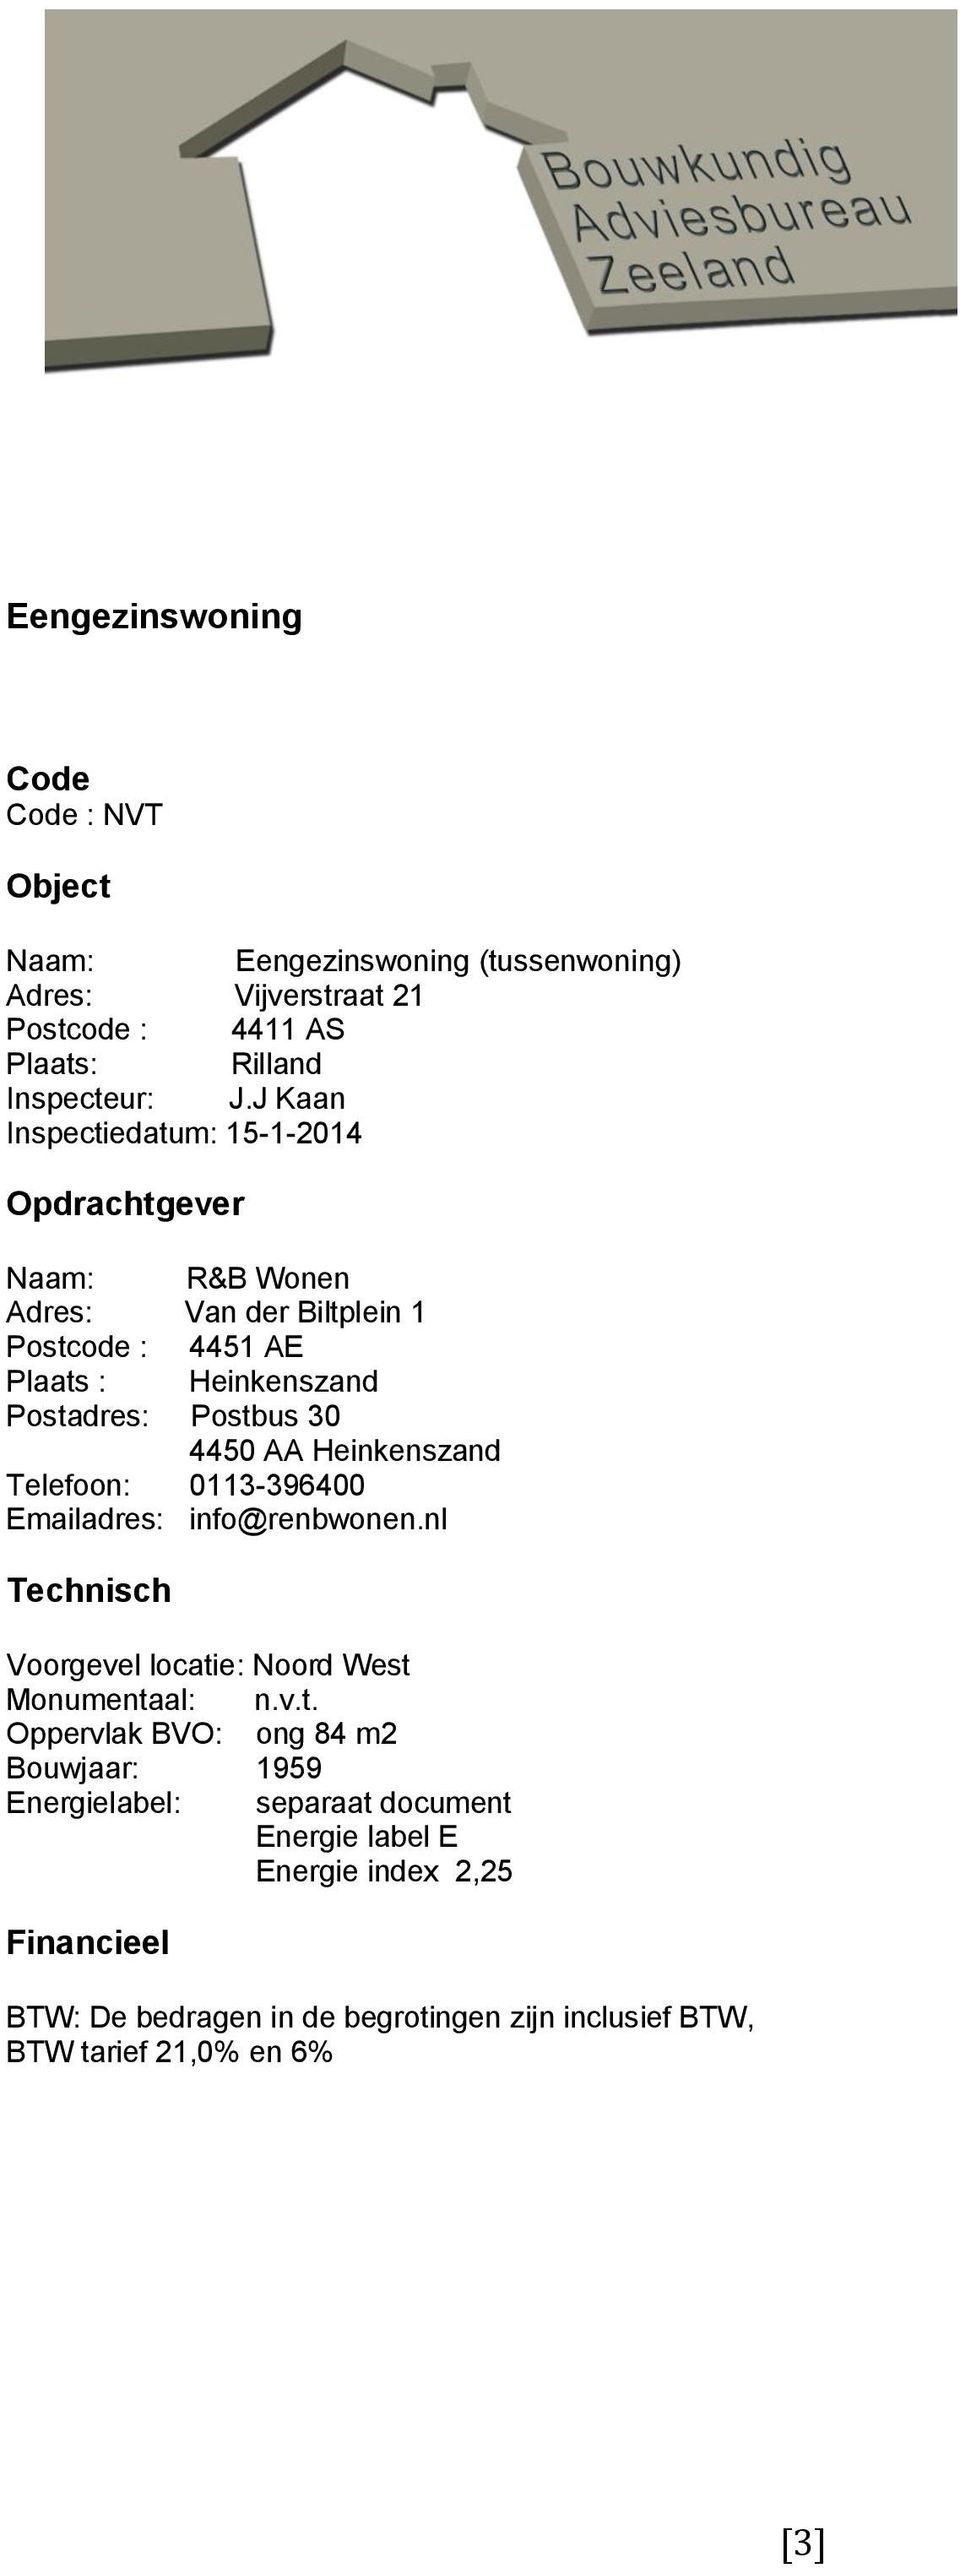 J Kaan Inspectiedatum: 15-1-2014 Opdrachtgever Naam: R&B Wonen Adres: Van der Biltplein 1 Postcode : 4451 AE Plaats : Heinkenszand Postadres: Postbus 30 4450 AA